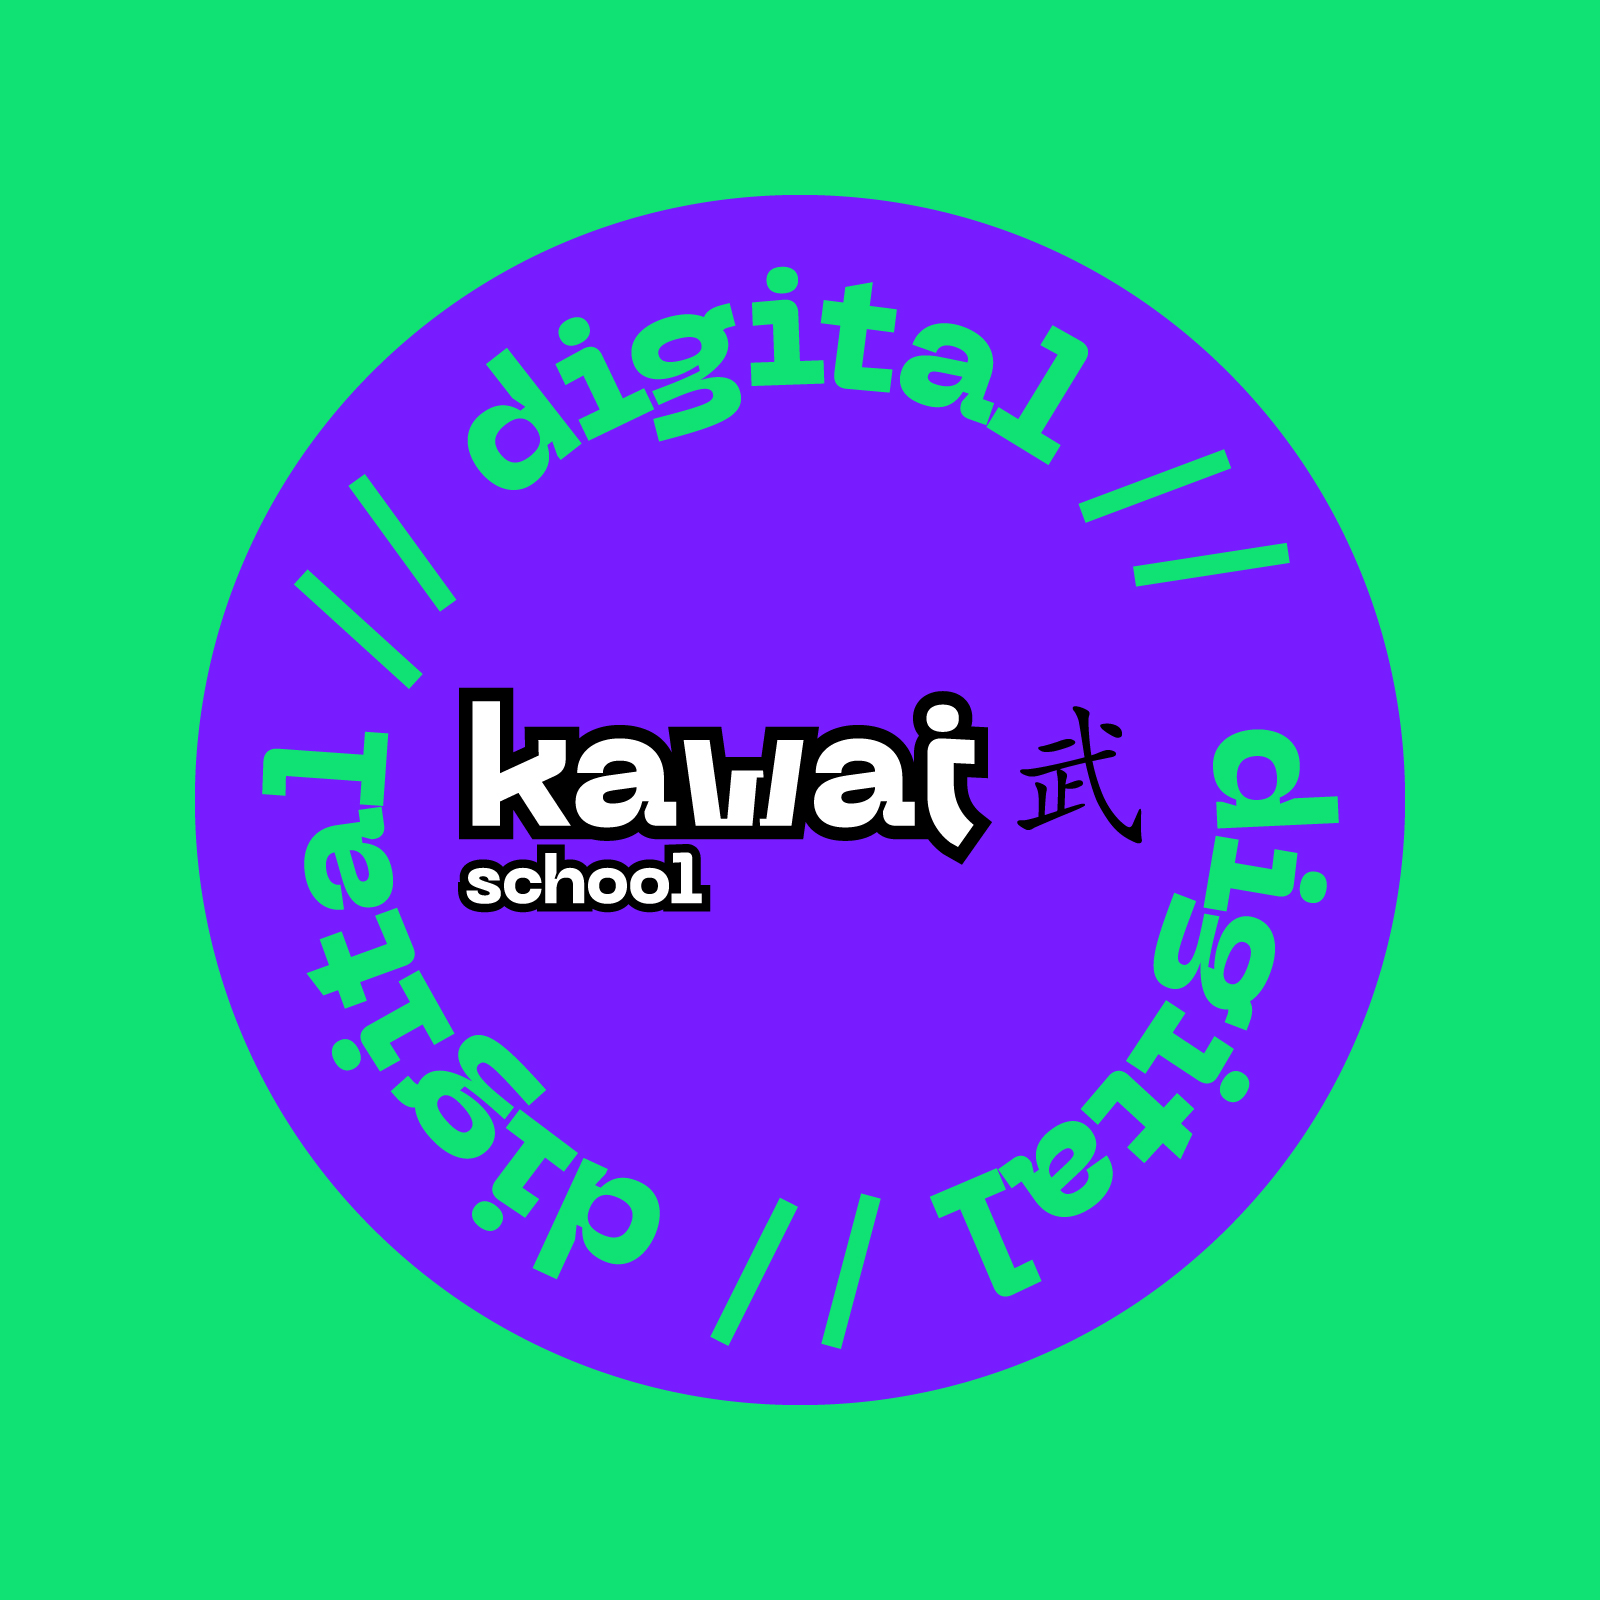 Kawai school